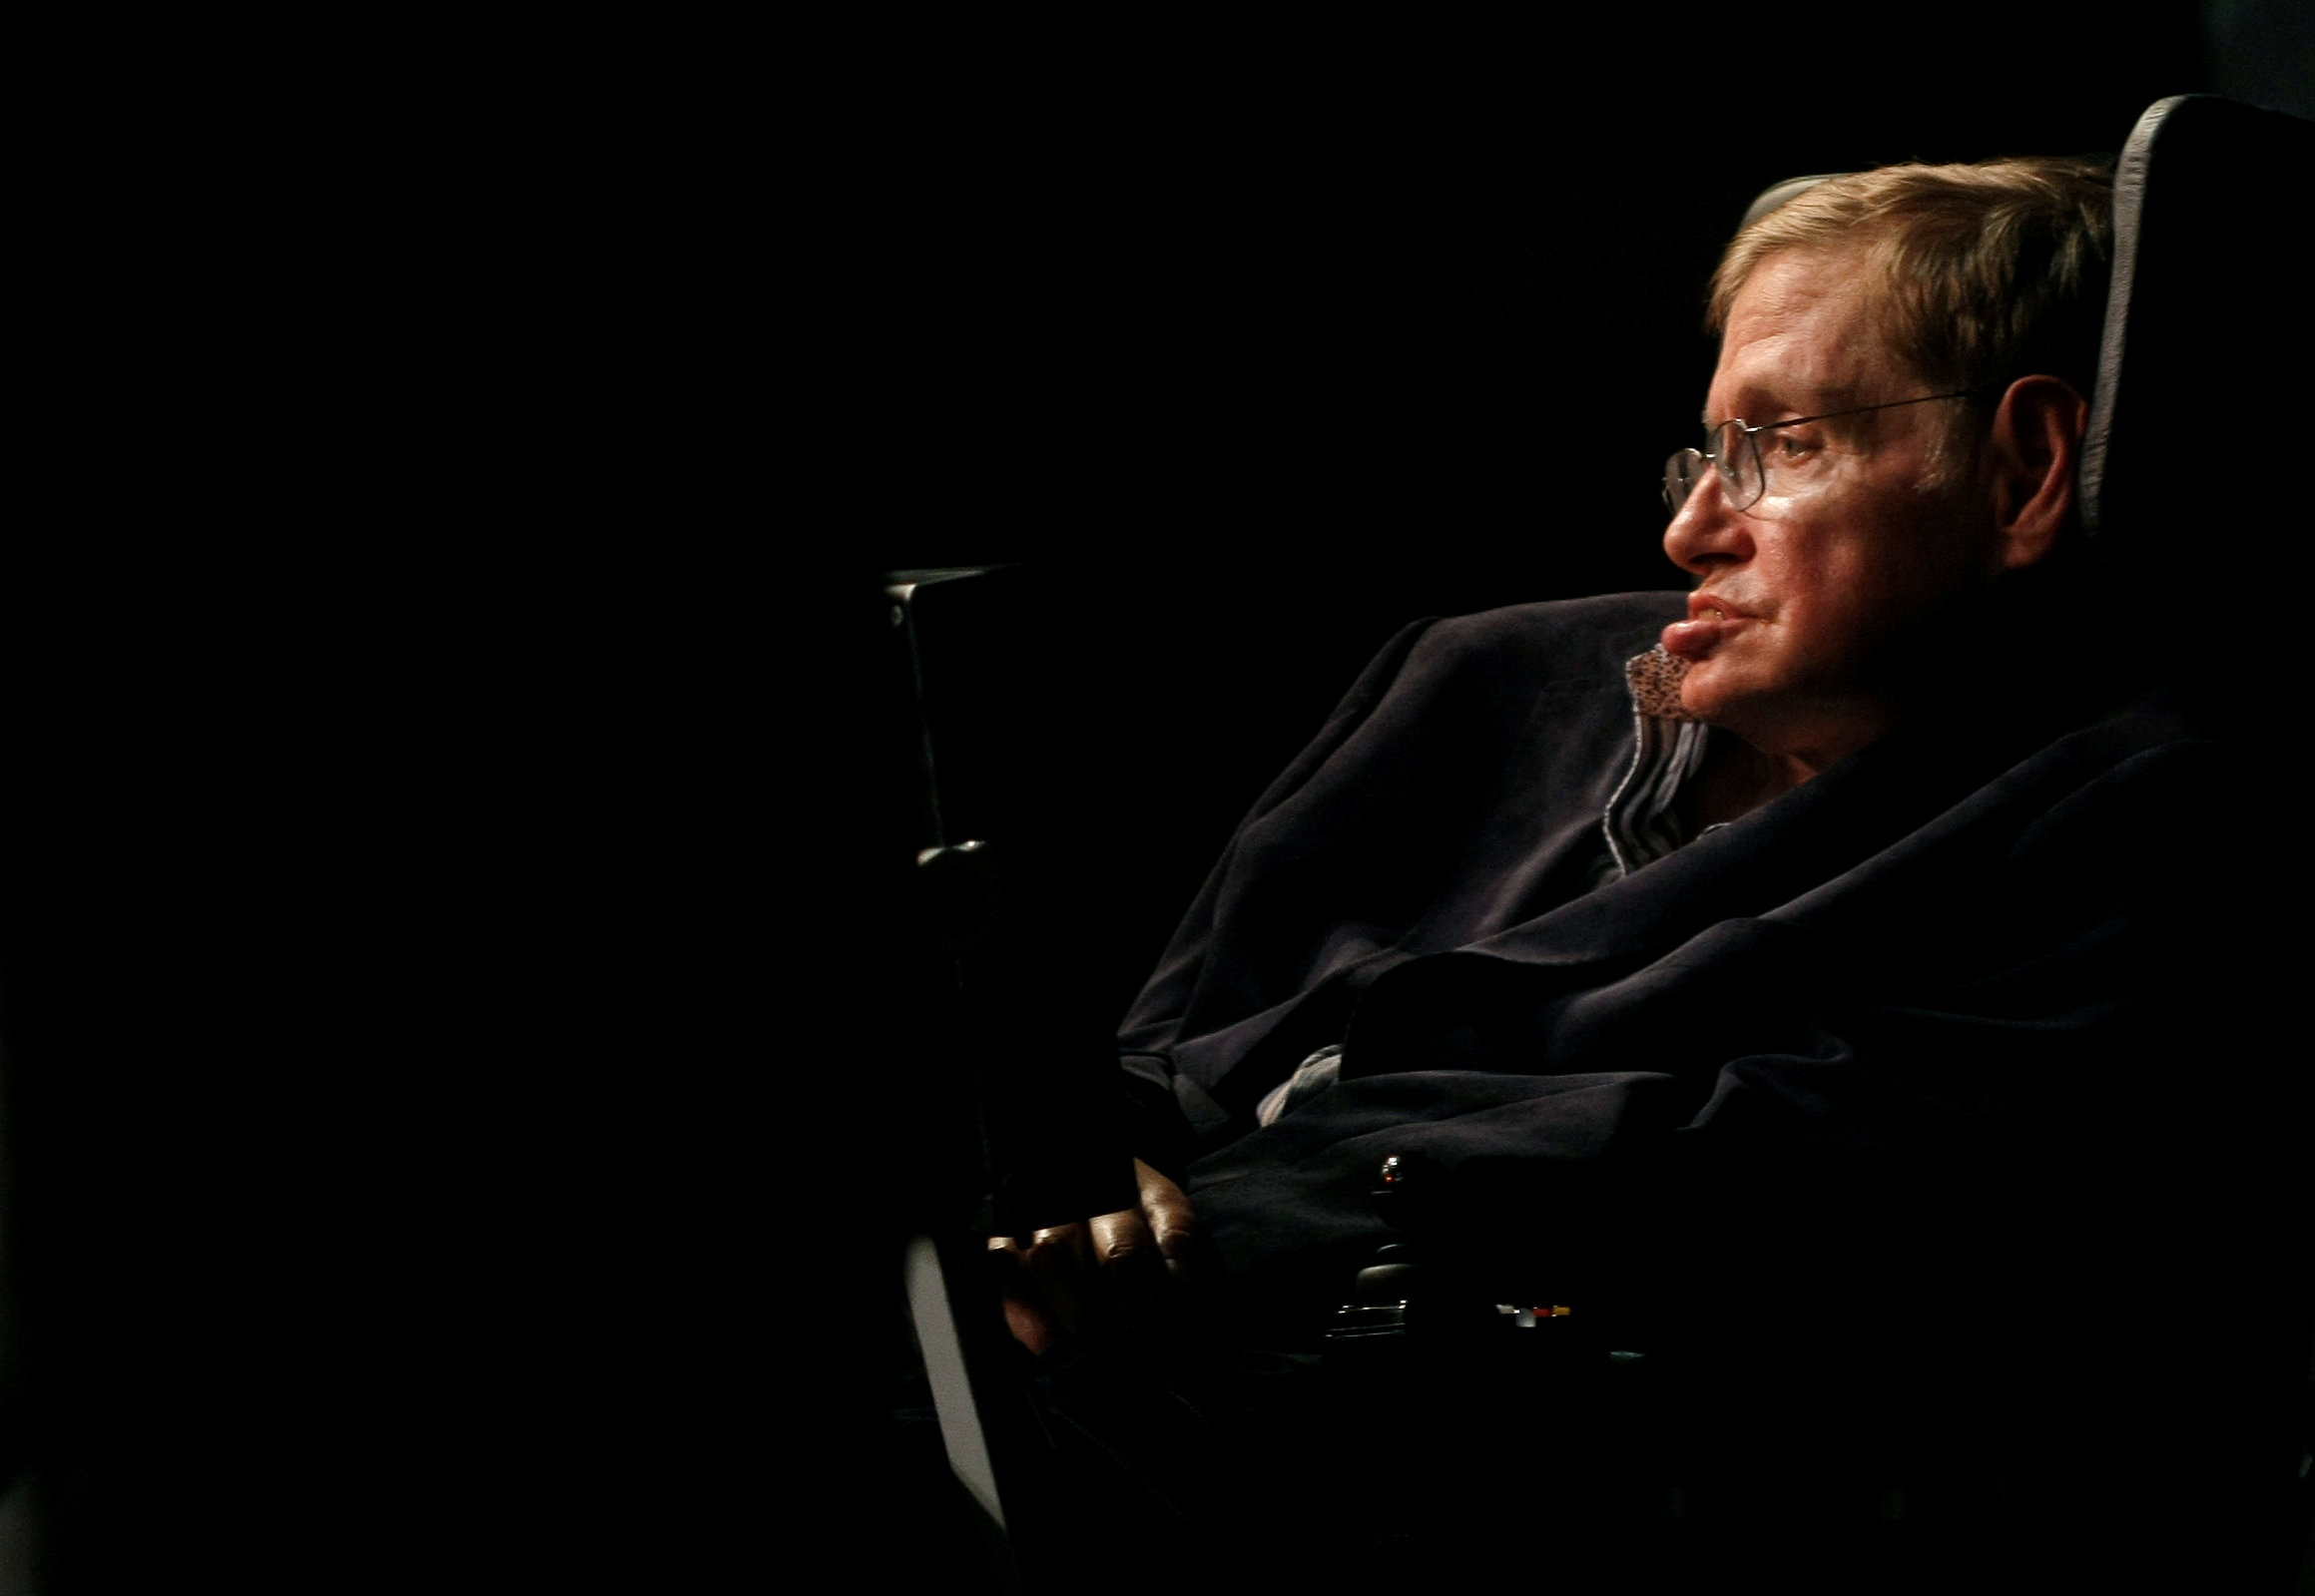 Hawking luchaba contra la esclerosis lateral amiotrófica (ELA) desde los 21 años.